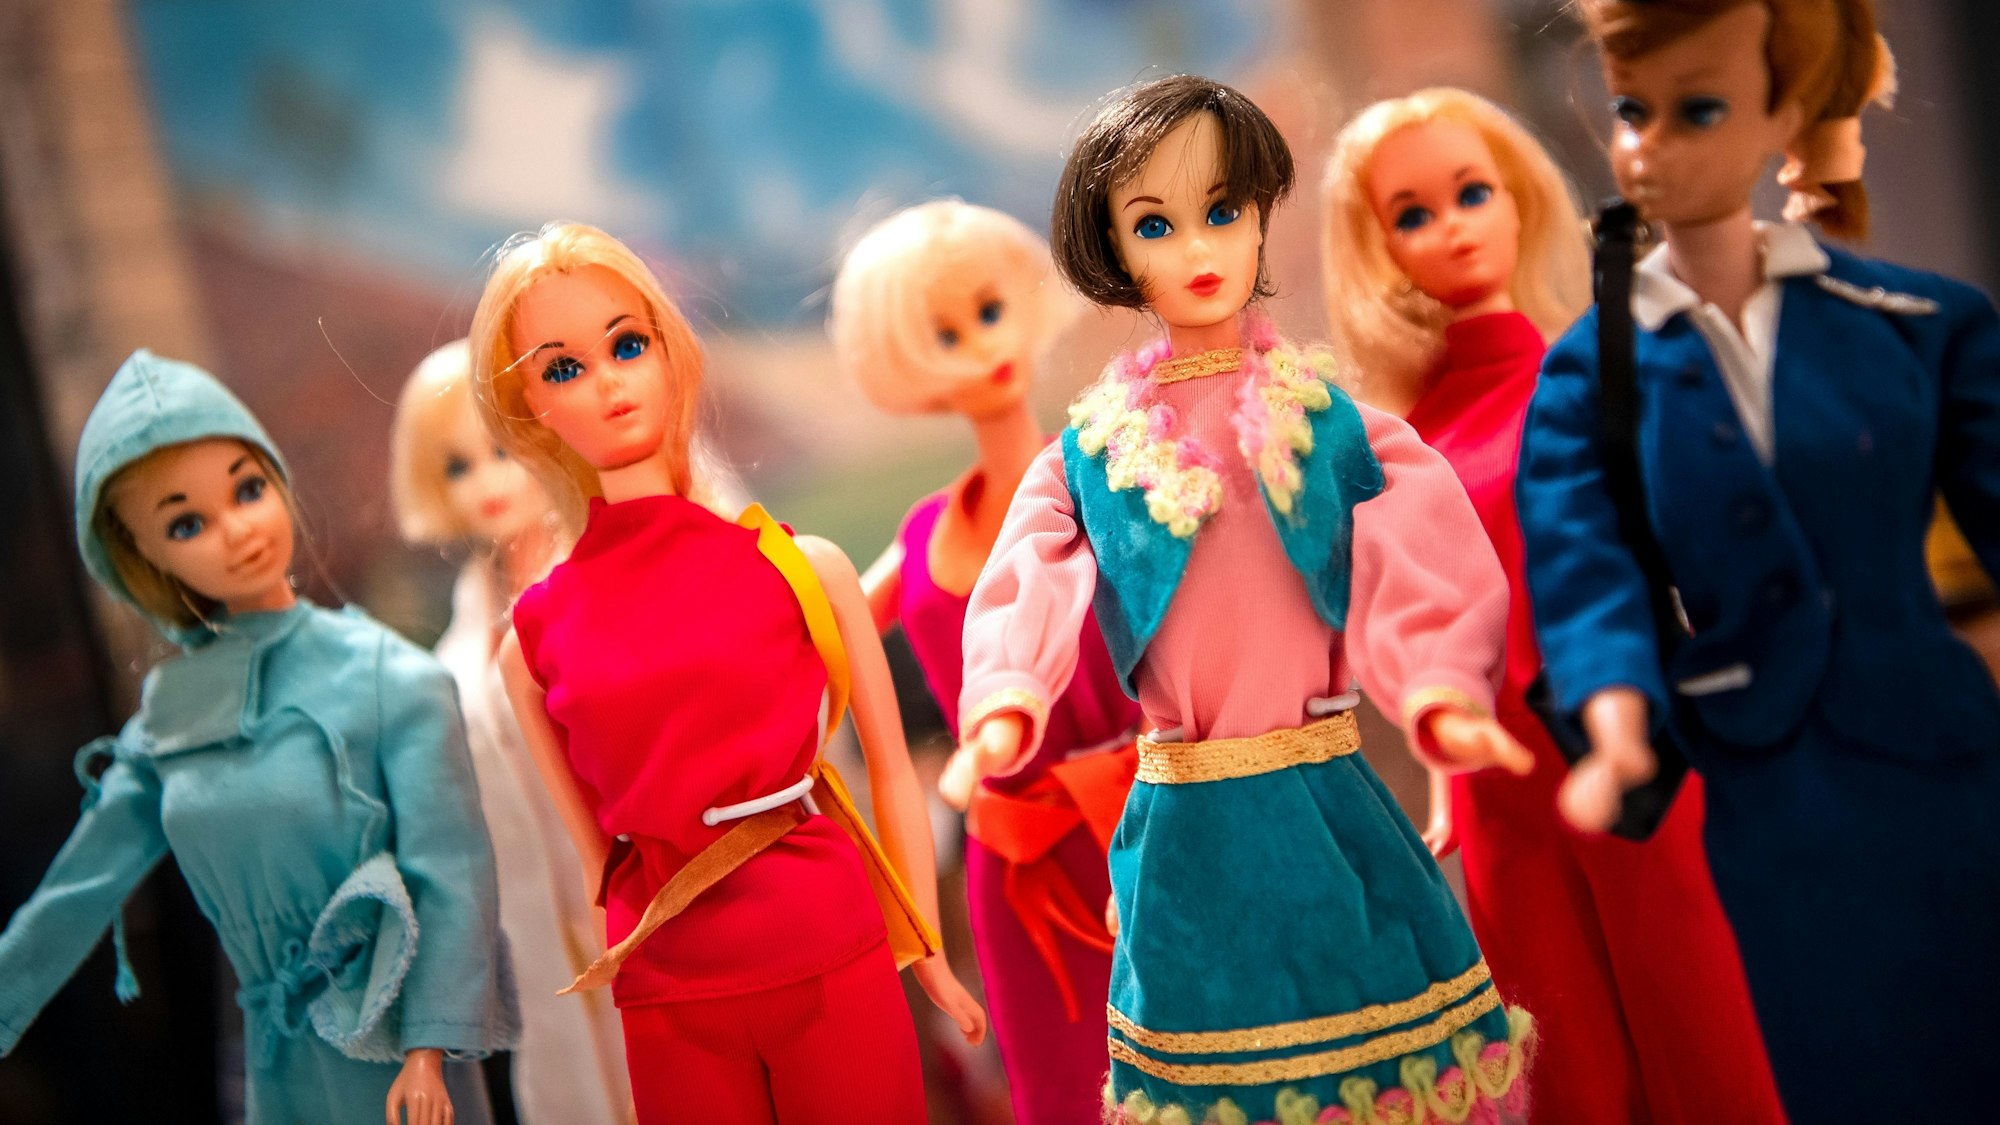 Verschiedene Barbie-Puppen stehen in einer Ausstellung nebeneinander